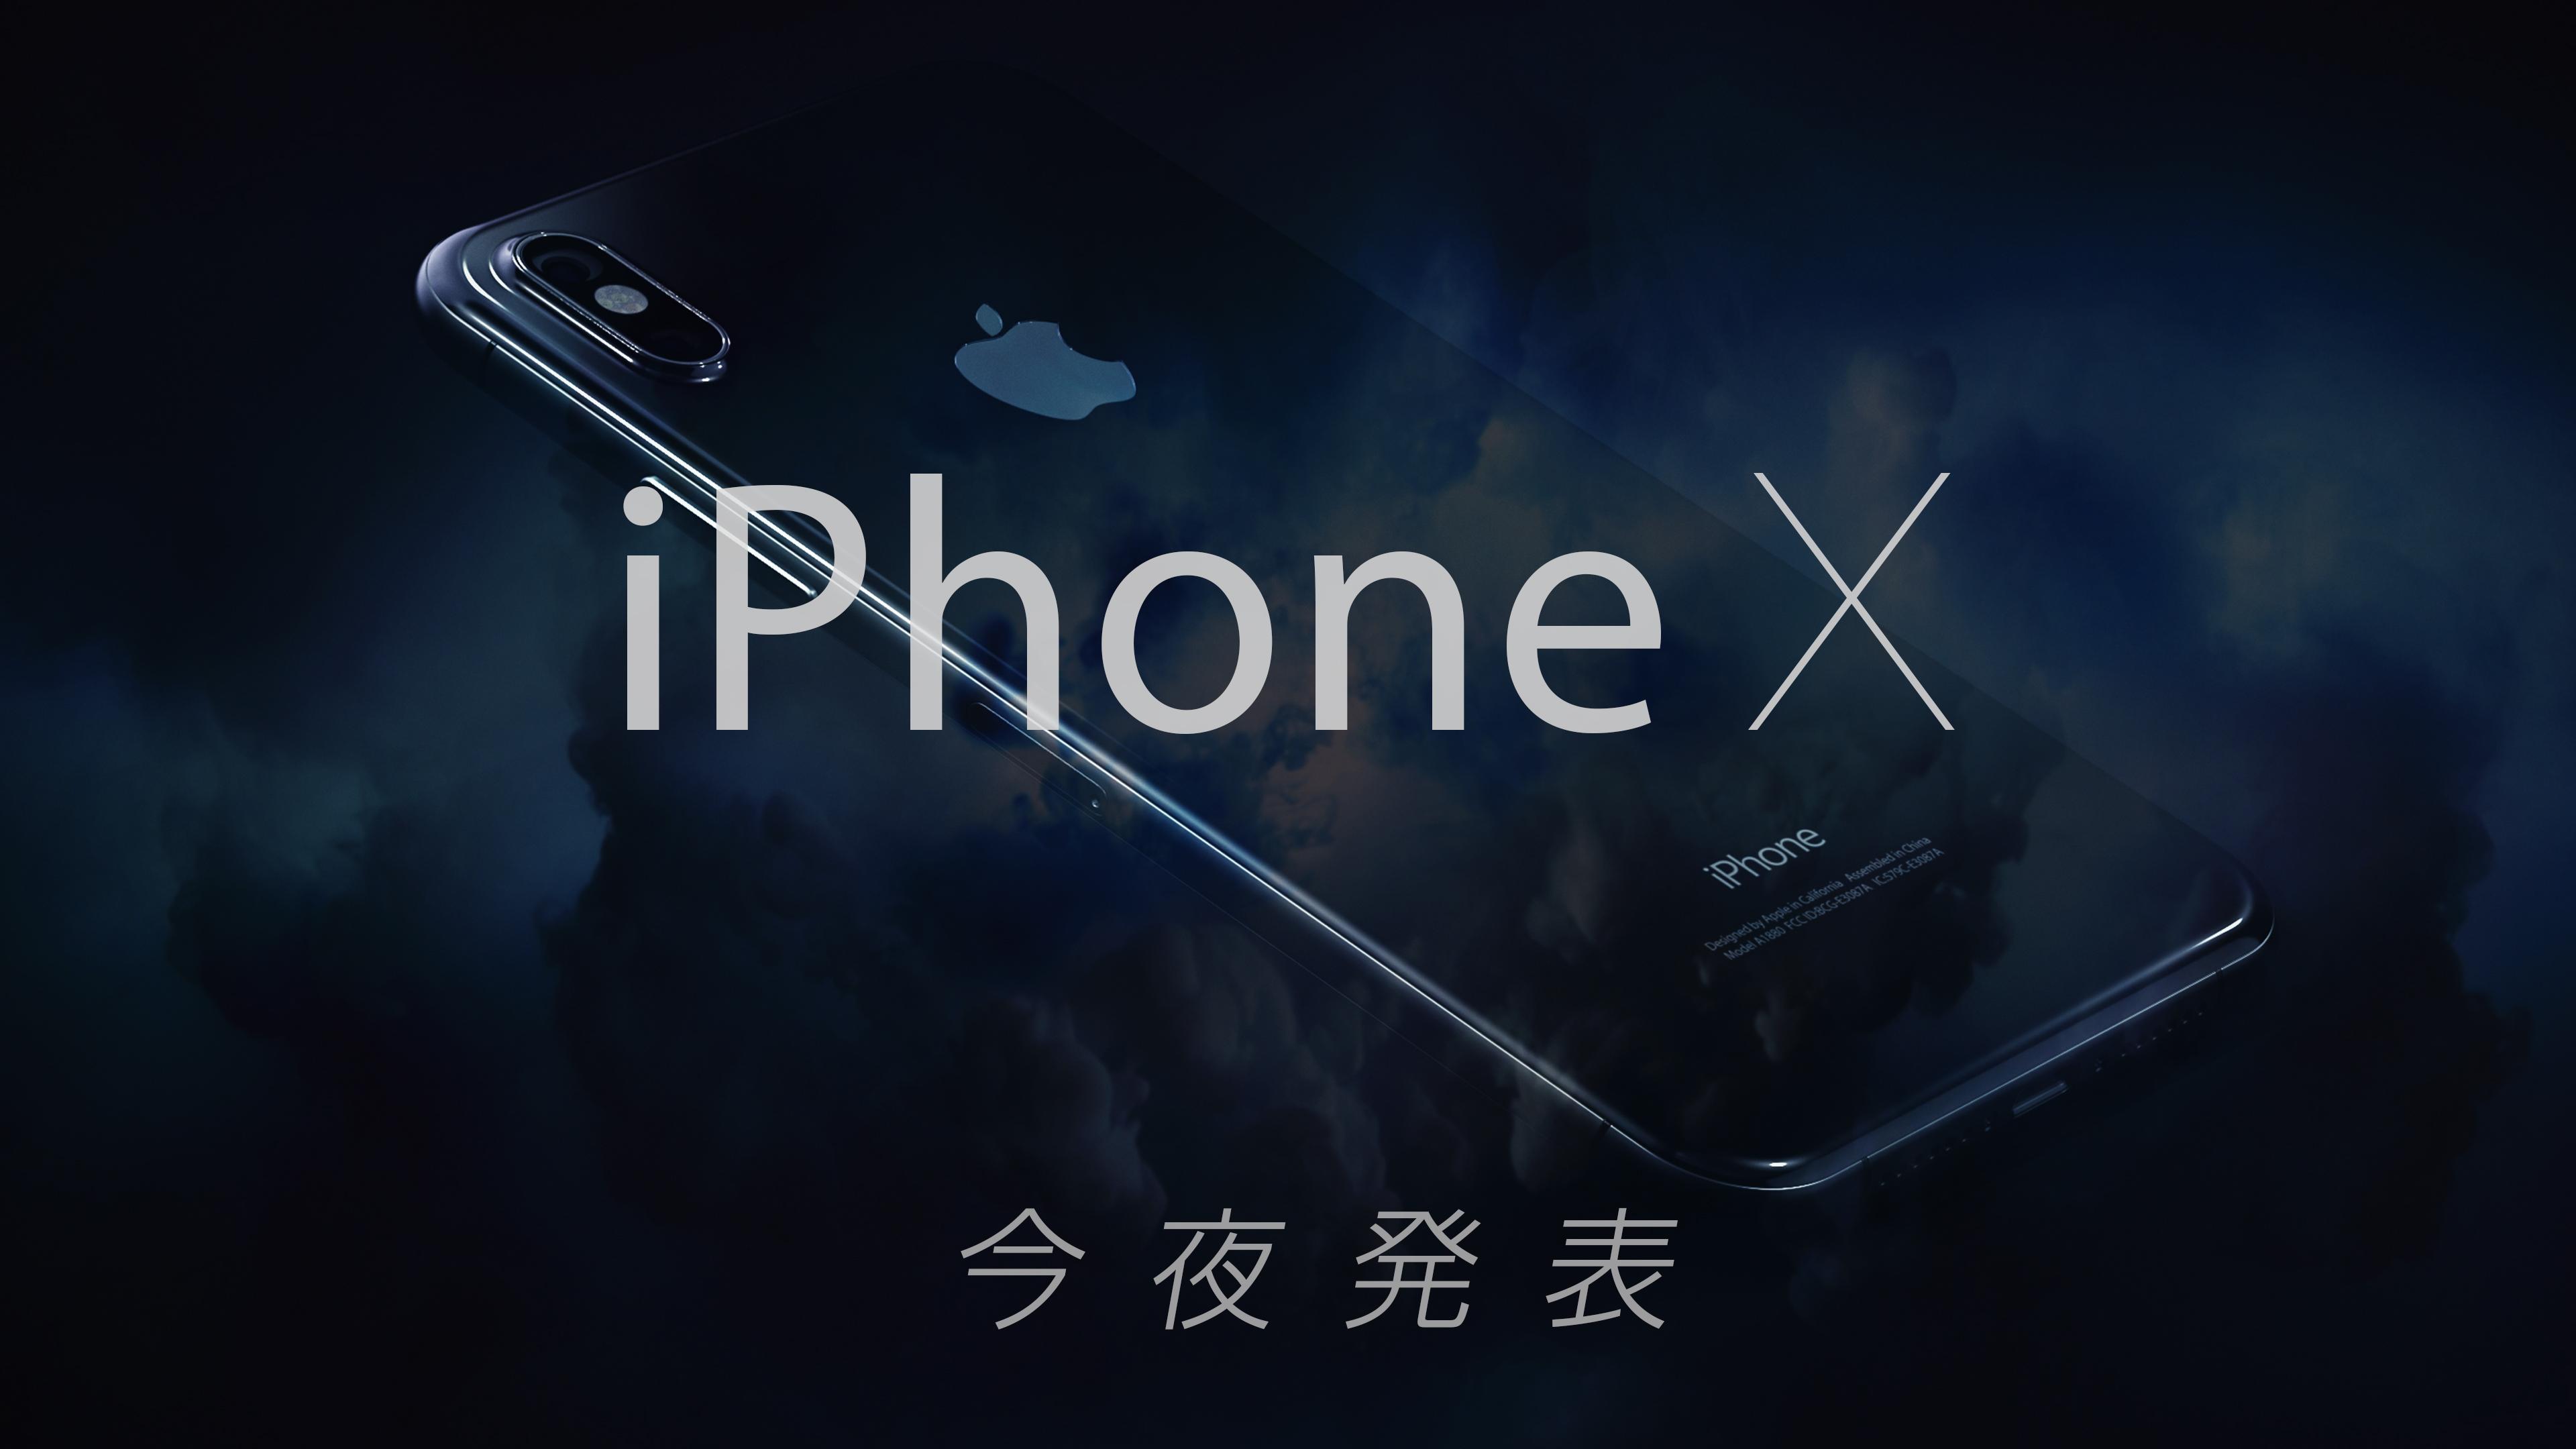 【今夜午前2時から】これがiPhone X。これまでの噂・流出情報を総